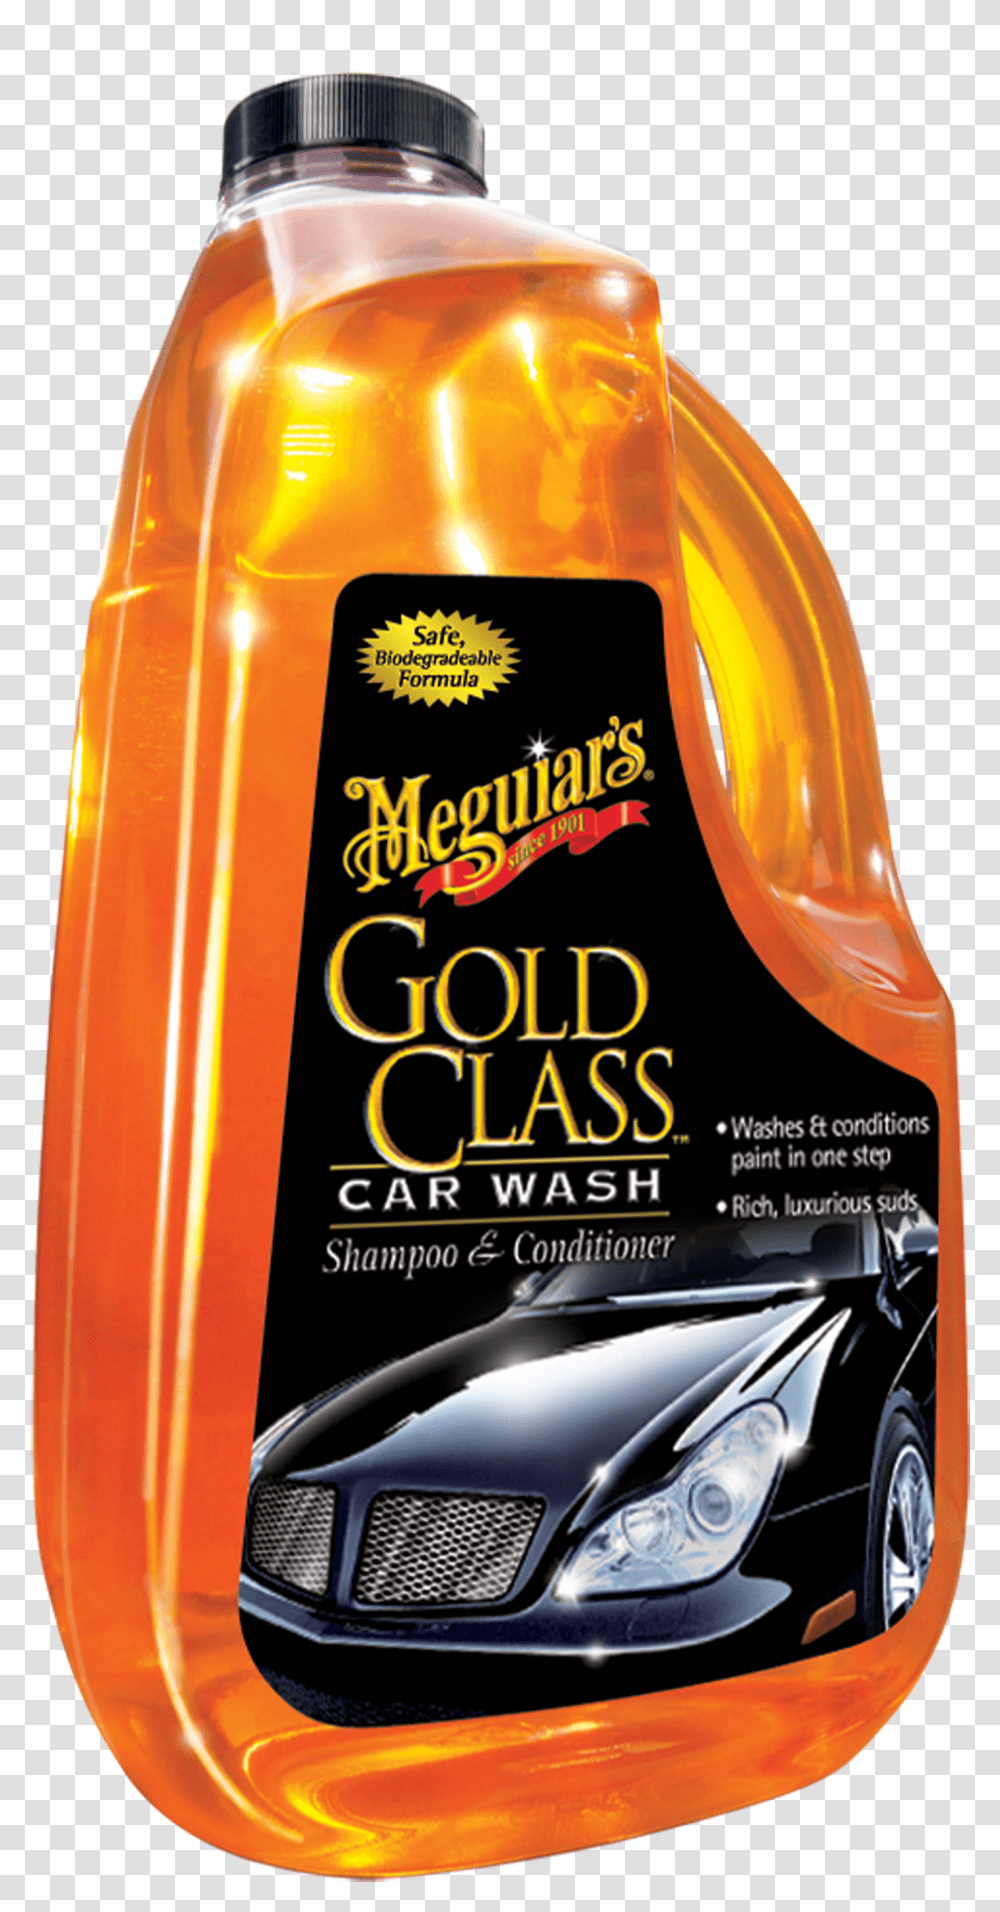 Gold Class Car Wash Shampoo Amp Conditioner Meguiars Gold Class Car Wash, Helmet, Liquor, Alcohol Transparent Png